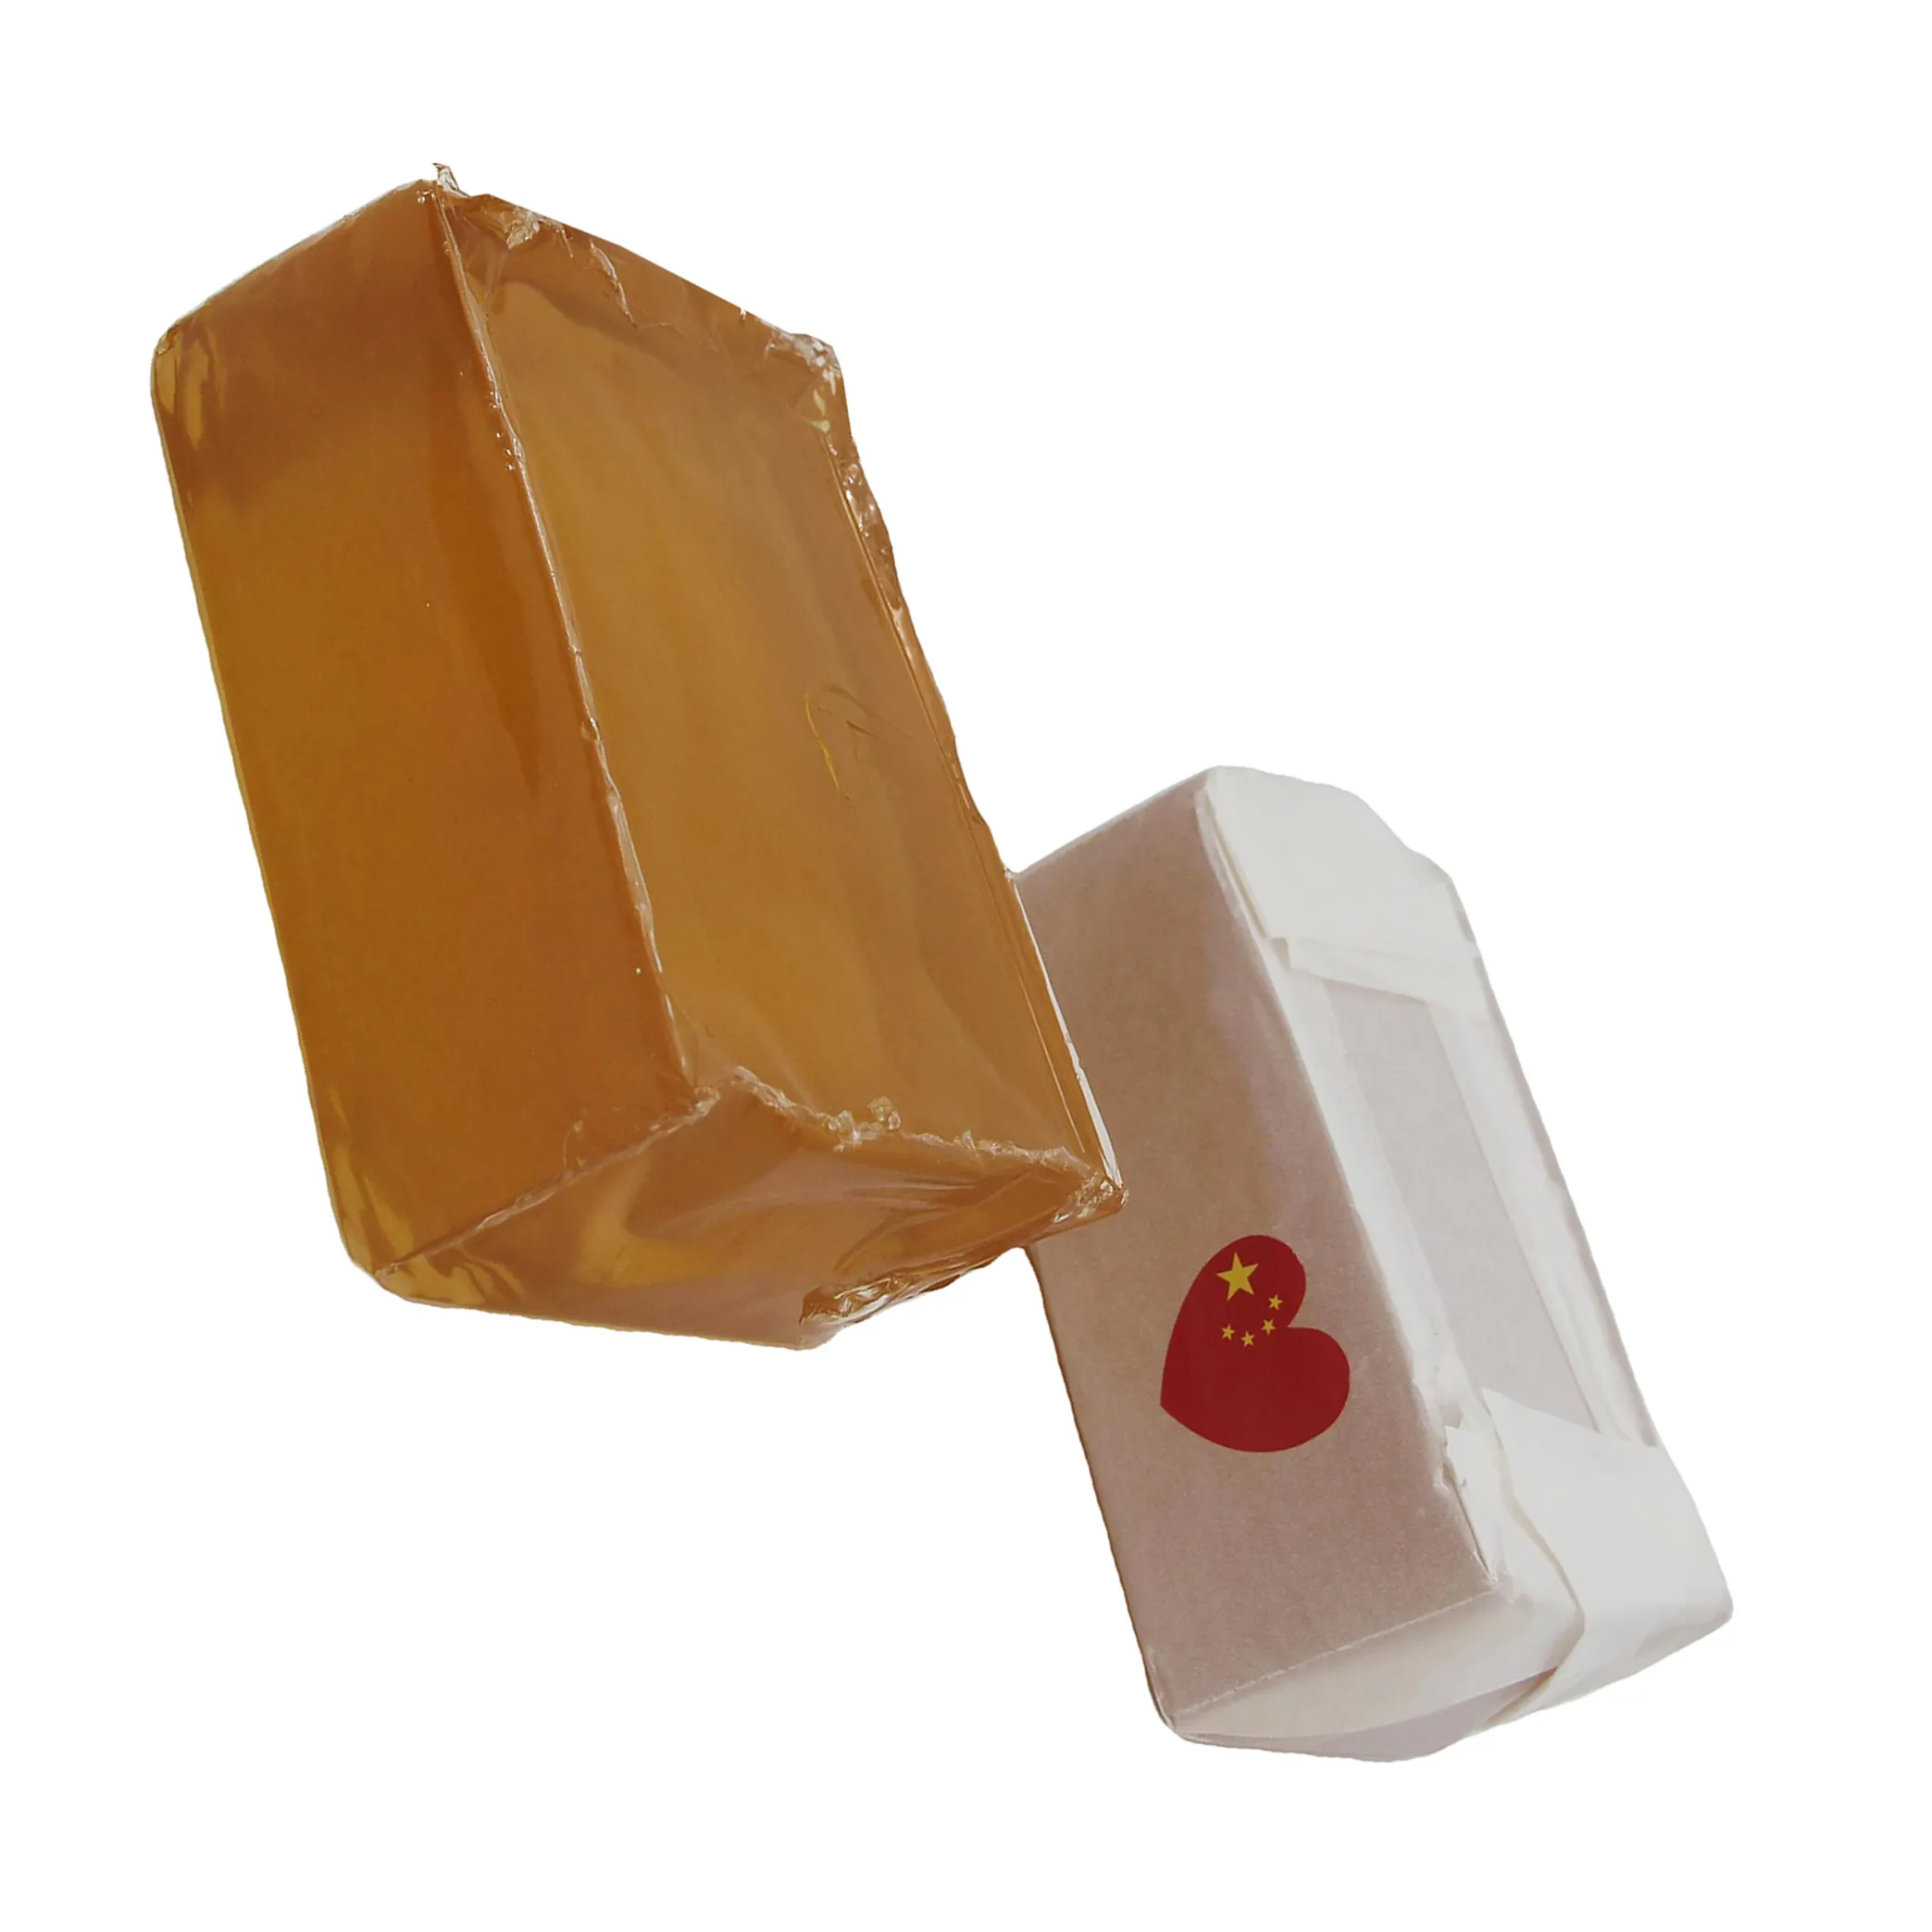 Adesivi EVA colla di gelatina per incollaggio di carta macchina per imballaggio scatola di carta siliconica adesivo adesivo a caldo prodotto eccellente sigillatura